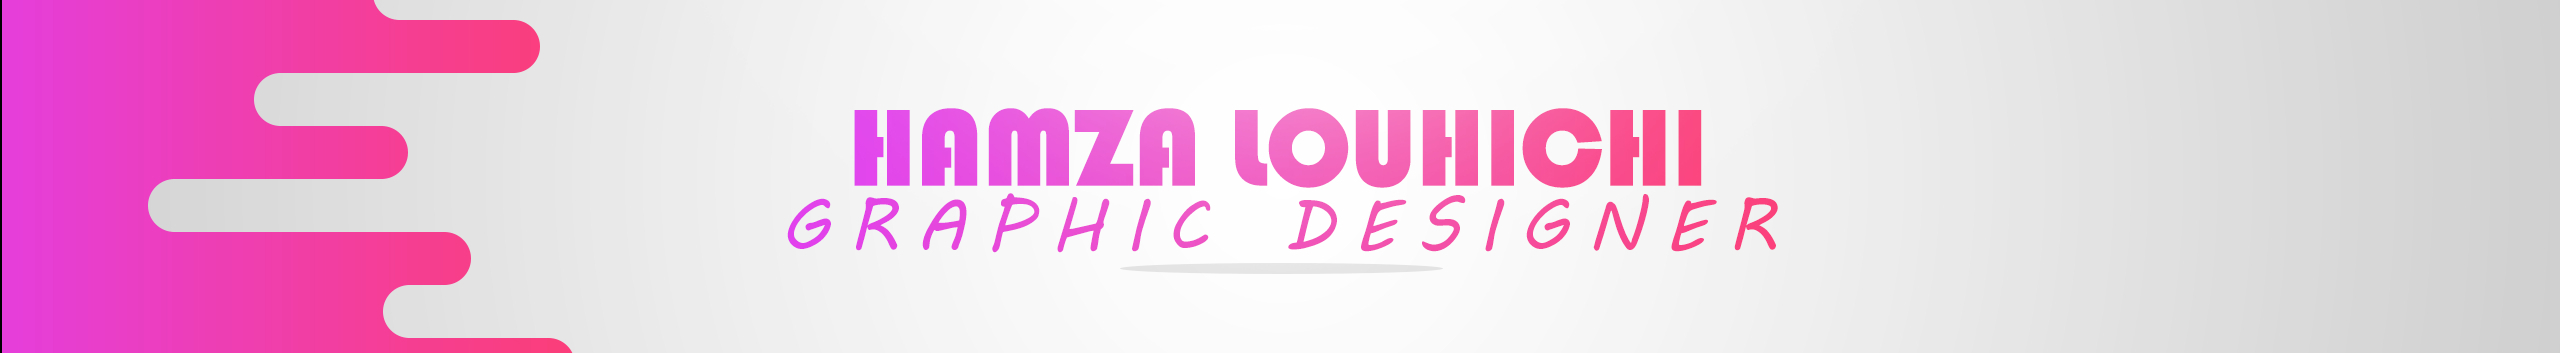 hamza louhichi's profile banner